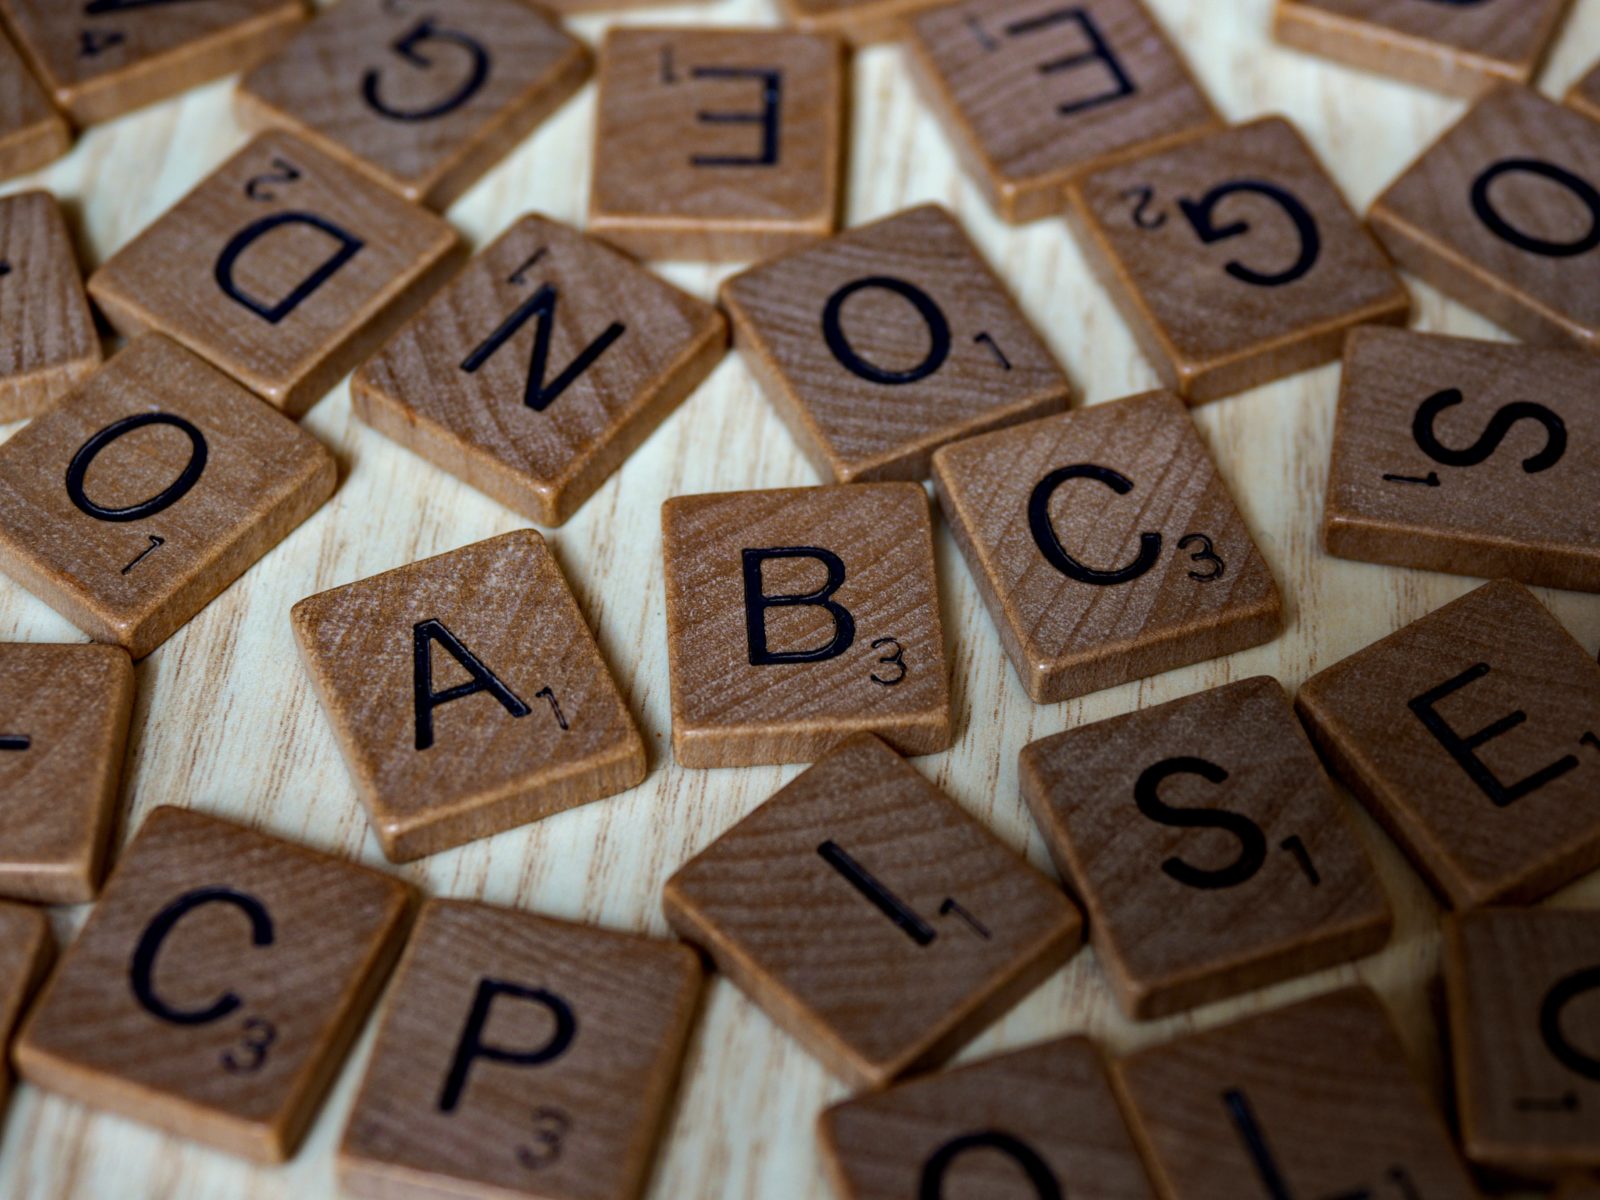 Ein wild durcheinandergewürfelter Haufen Scrabble-Steine